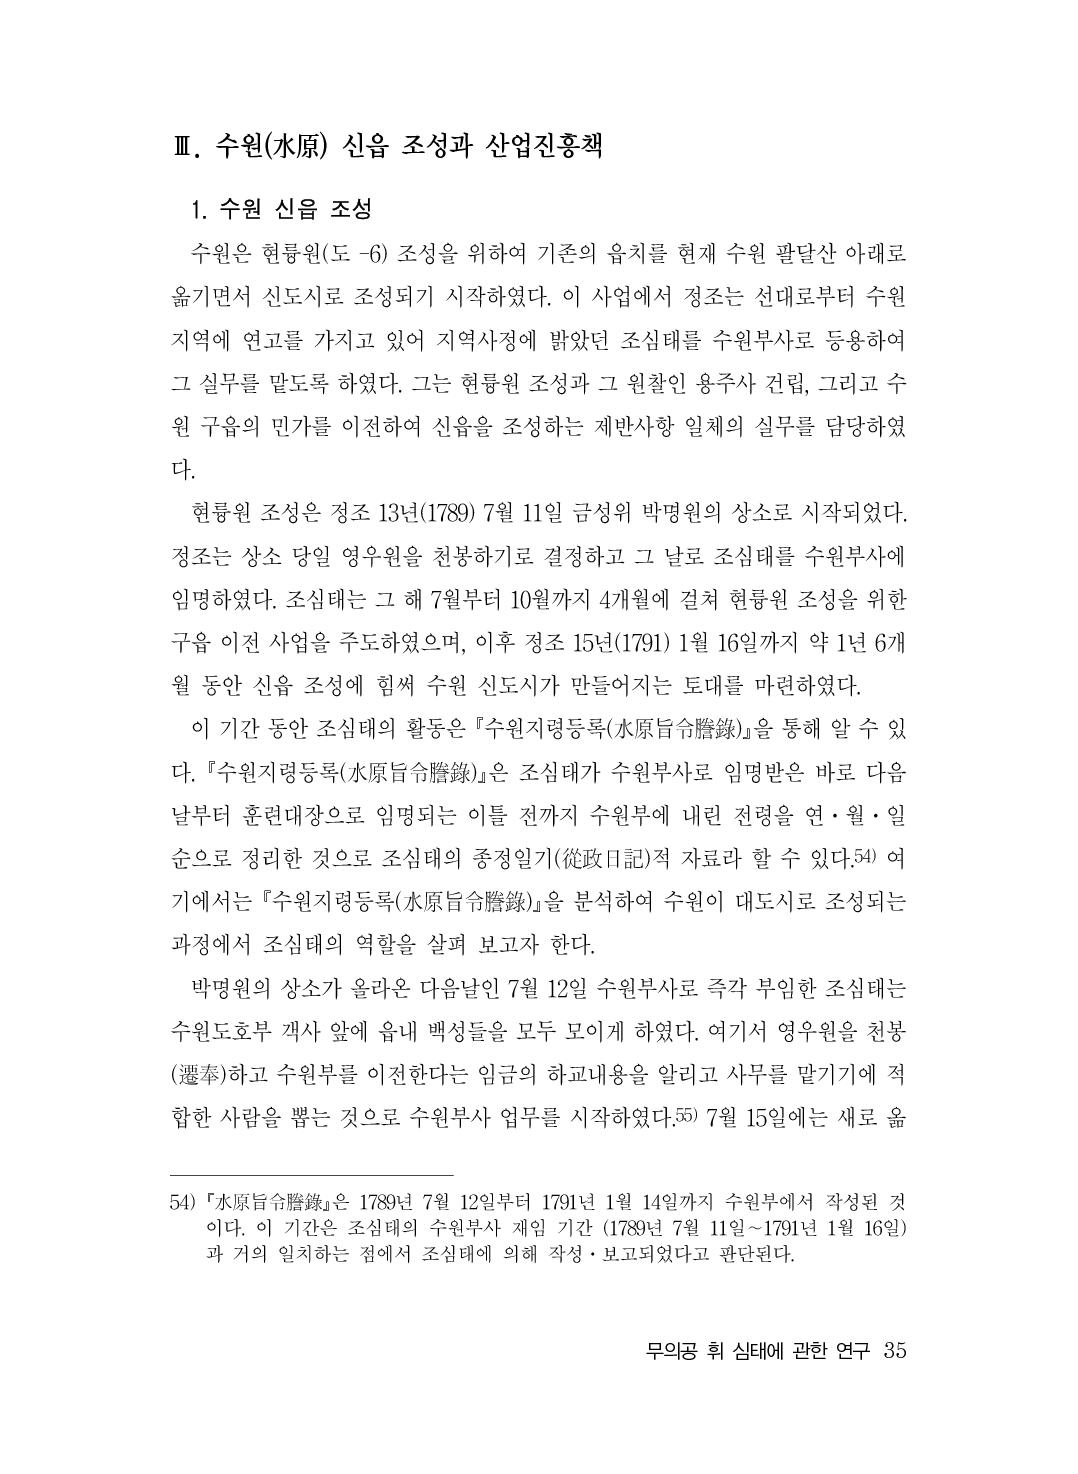 (전체) 송산종보(27호)(최종)_36.jpg